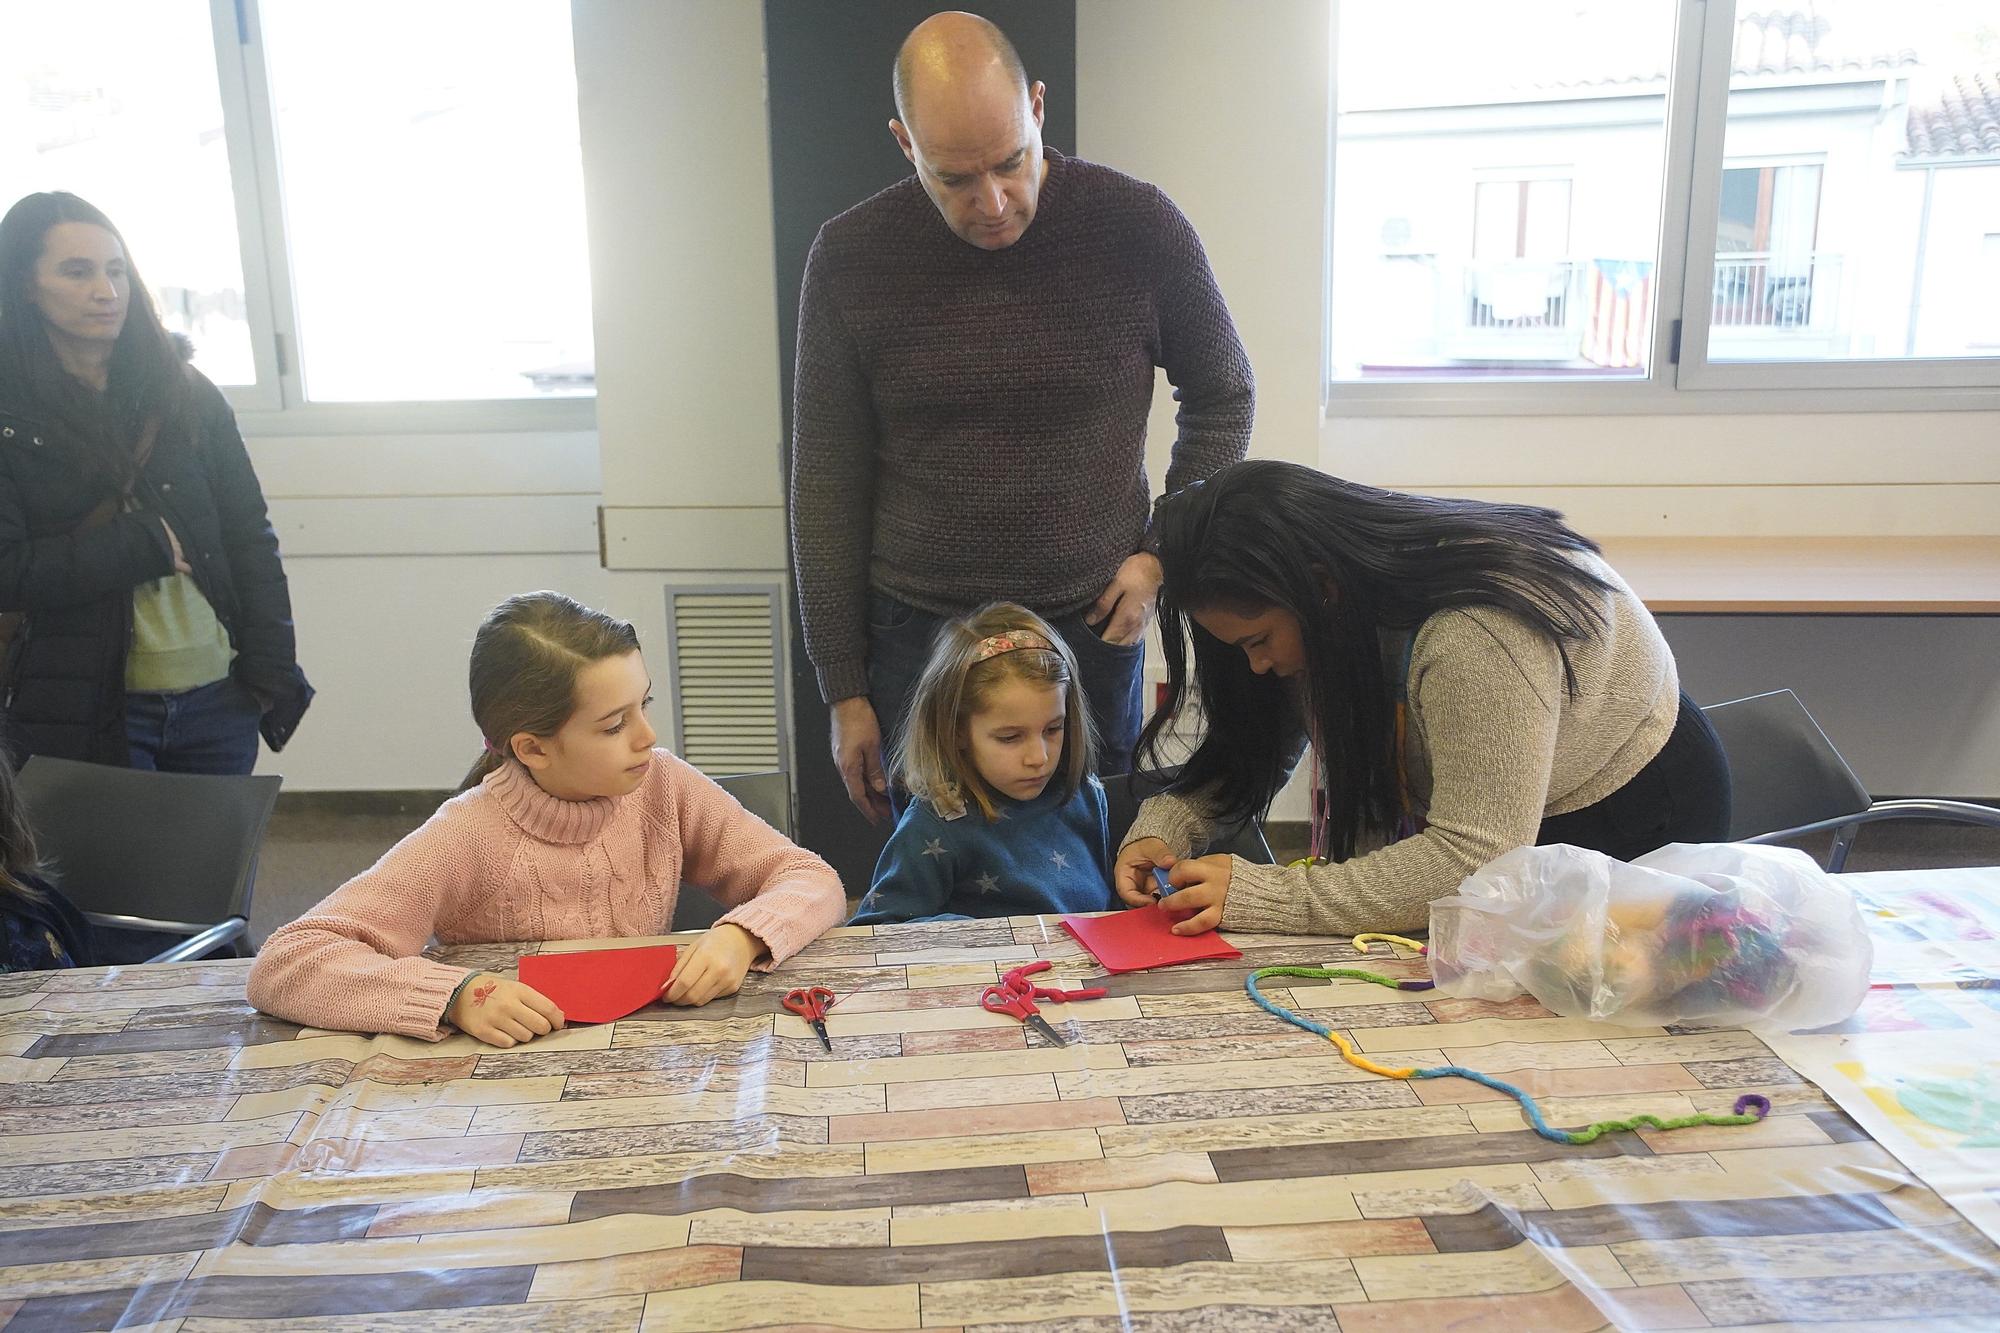 Les AFA’s de l’esquerra del Ter de Girona organitzen un parc infantil de Nadal